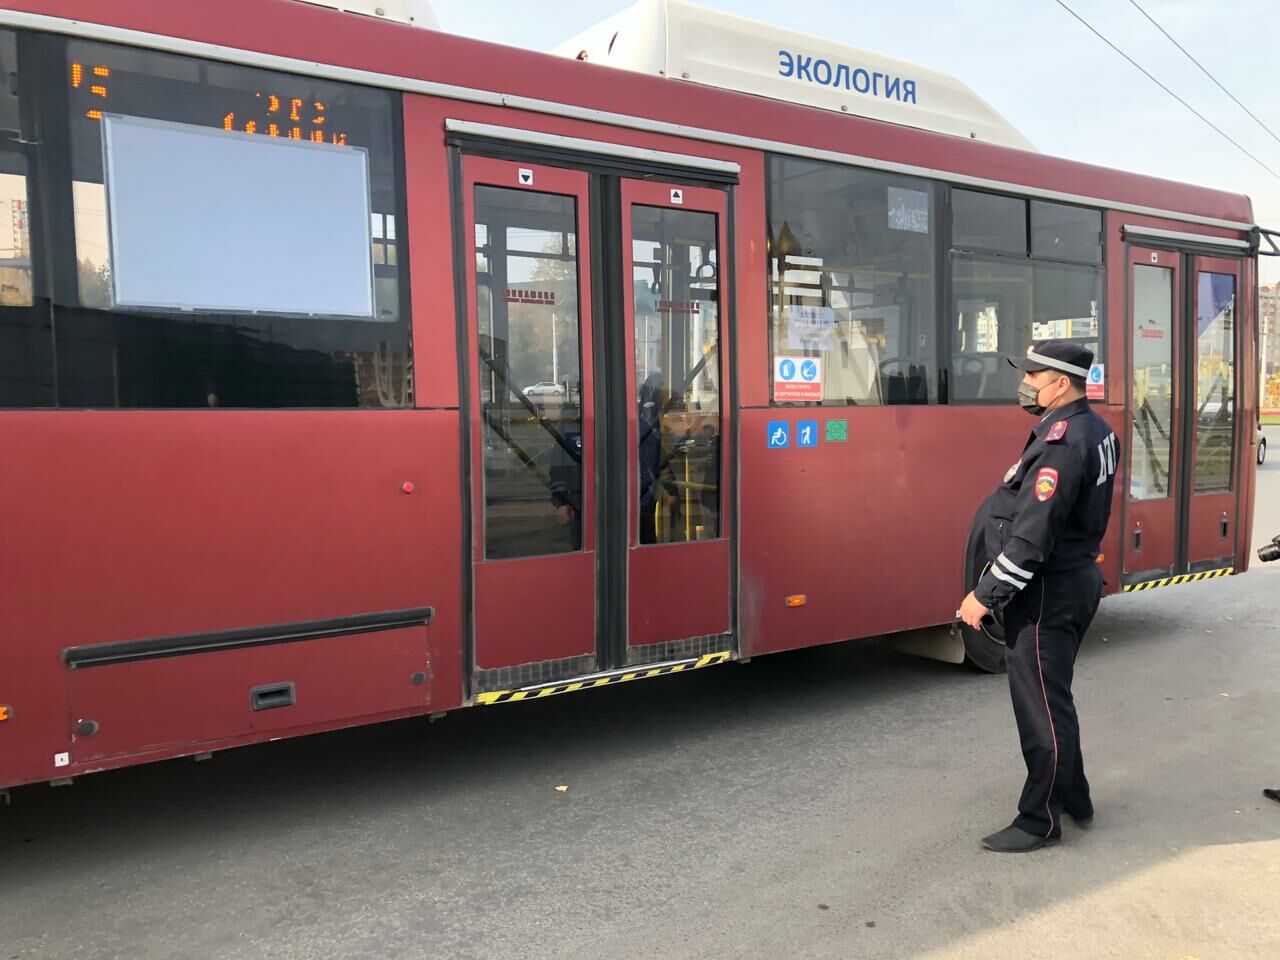 Нацпроект позволит купить Татарстану большие автобусы